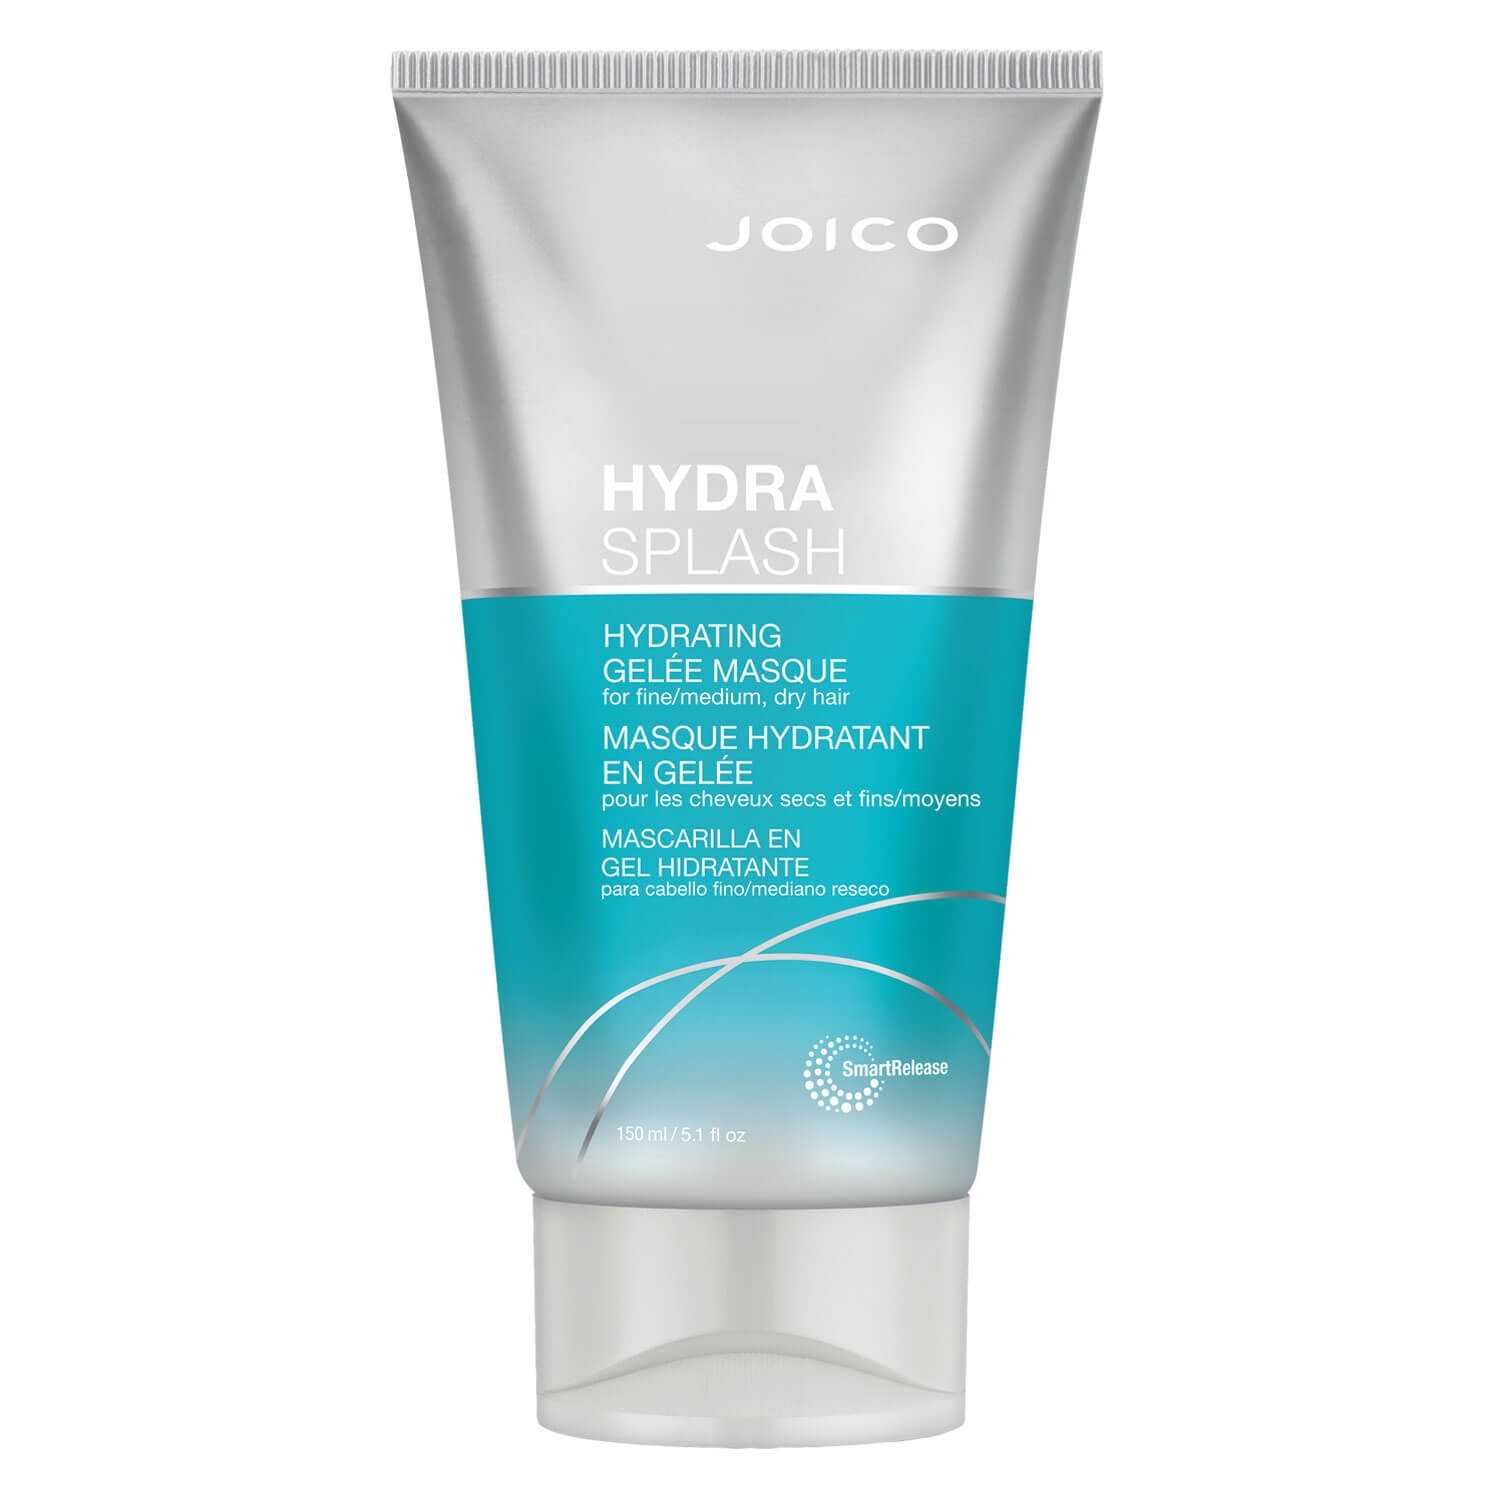 Produktbild von Hydra Splash - Hydrating Gelée Masque